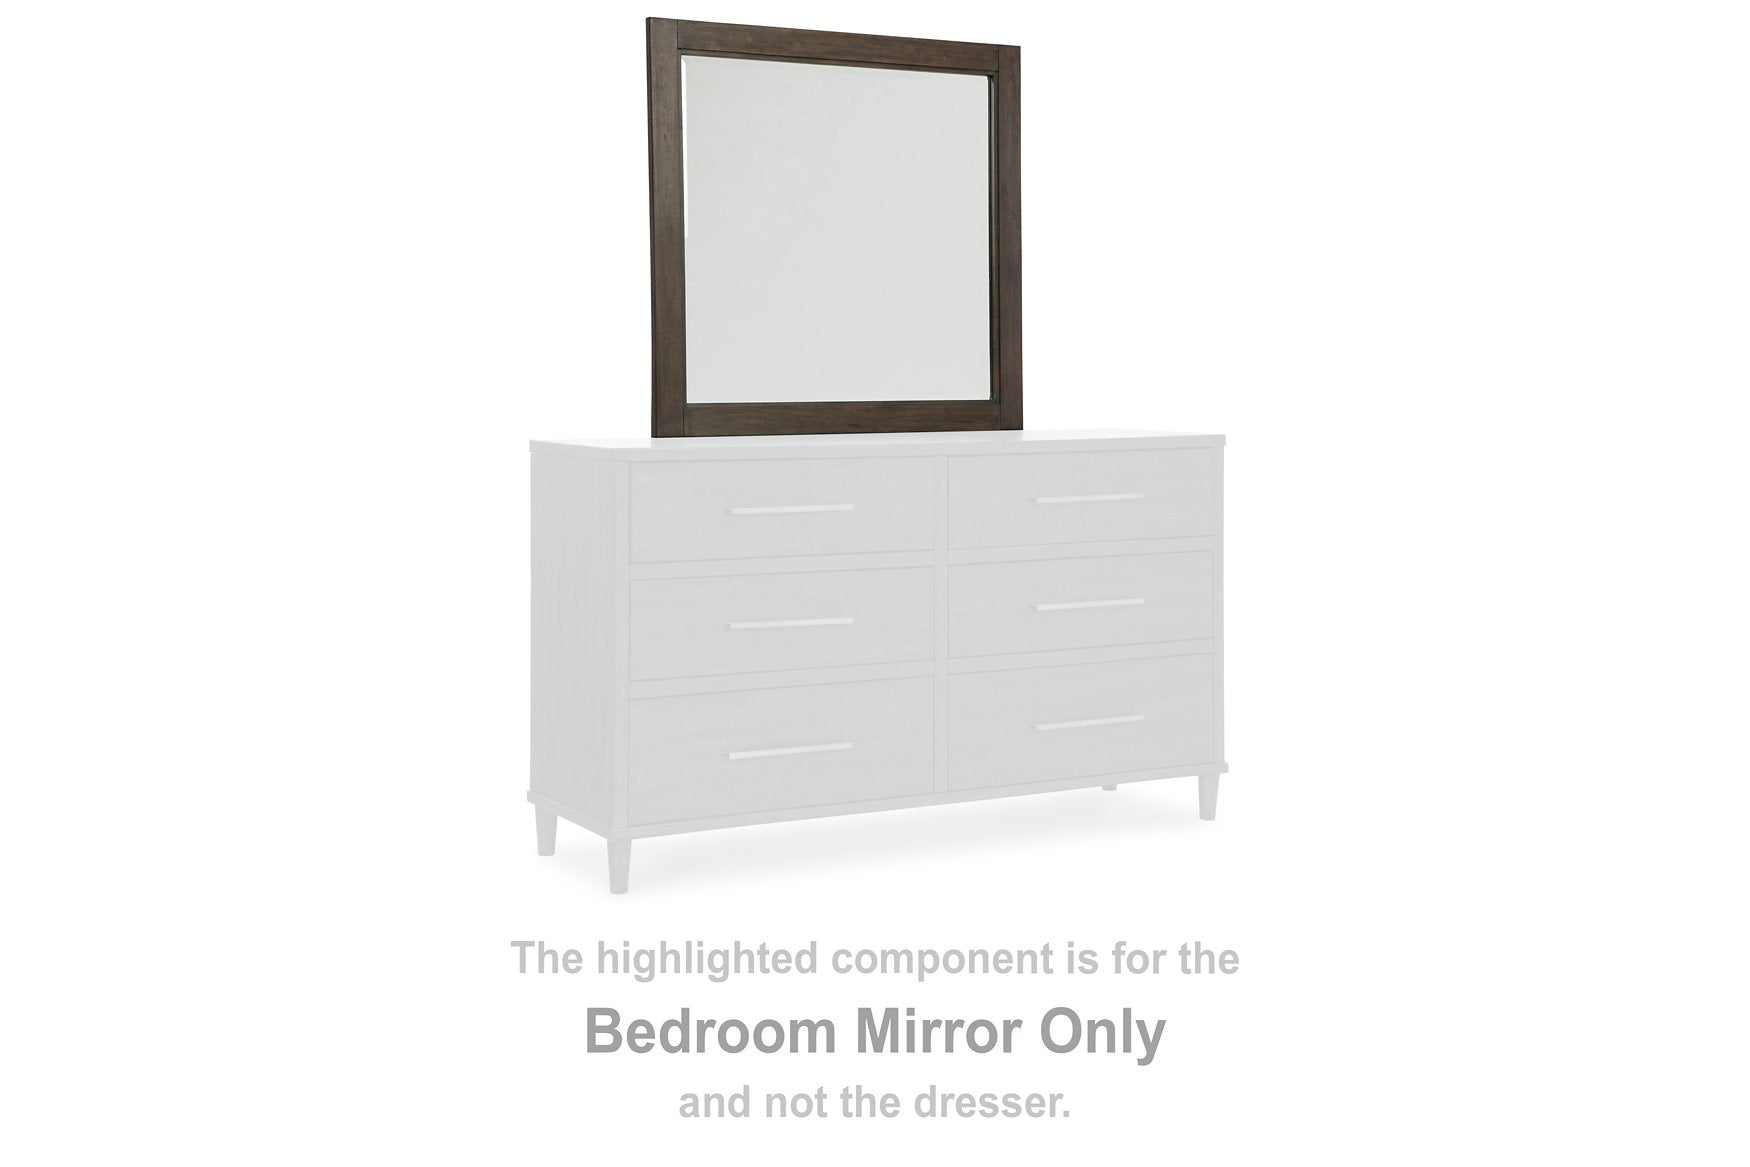 Wittland Dresser and Mirror - Half Price Furniture